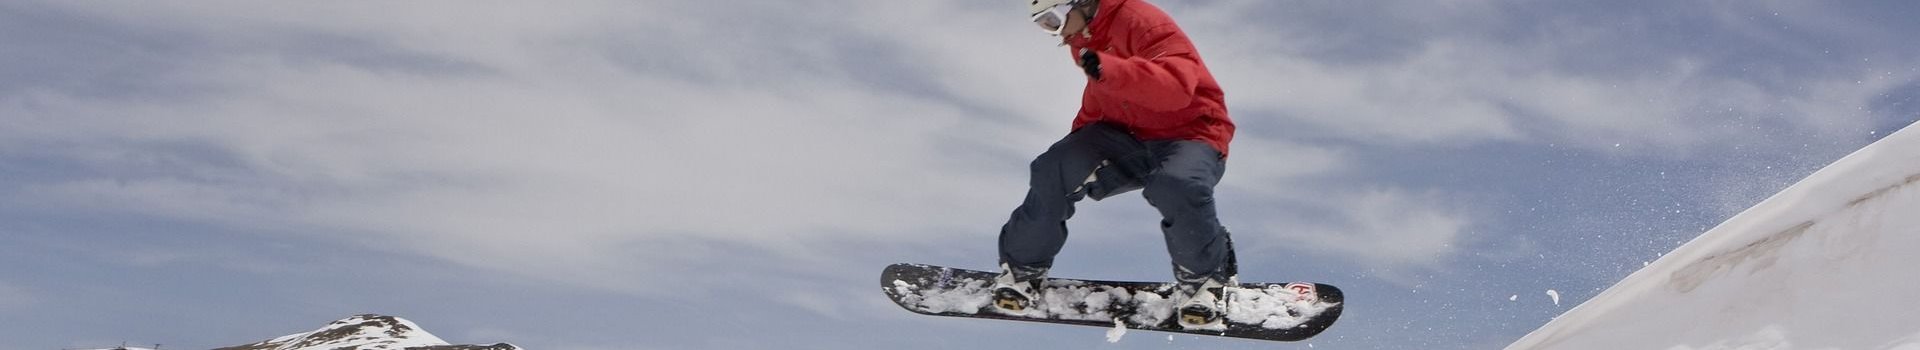 Nakolanniki snowboardowe, czyli jak uniknąć stłuczonego kolana